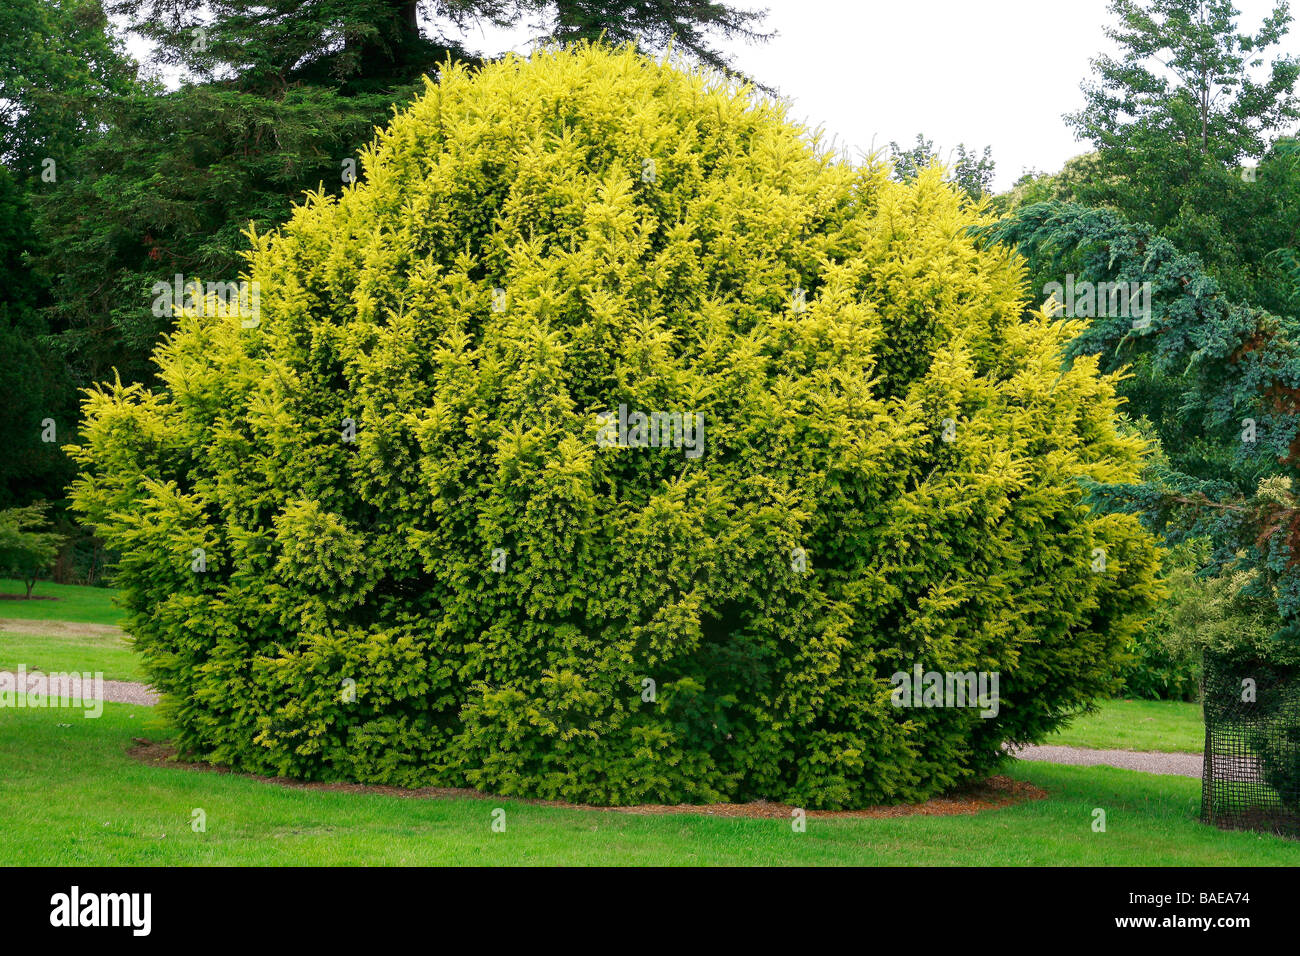 Taxus baccata 'Aurea' Stock Photo